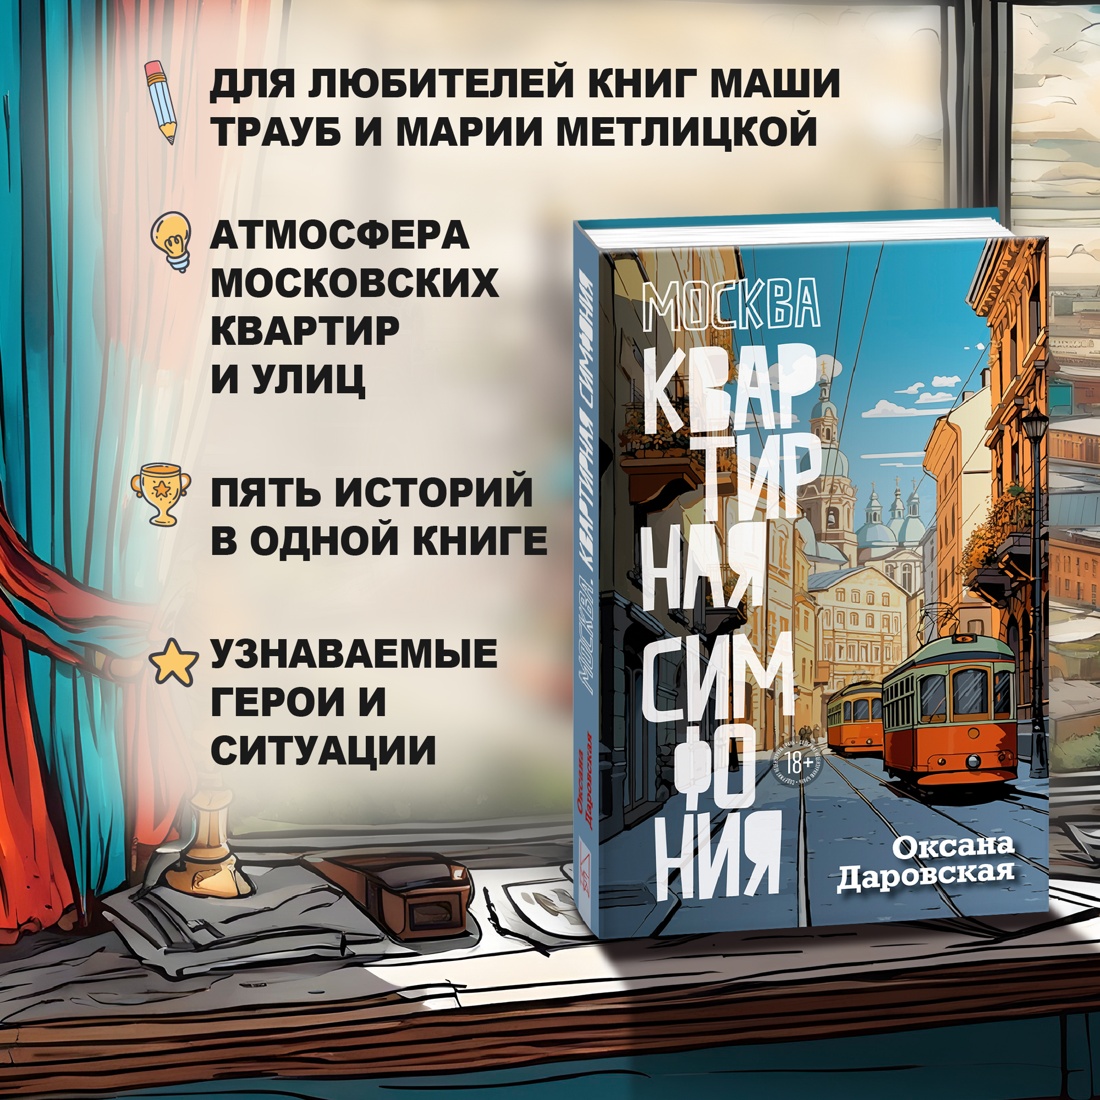 Промо материал к книге "Москва. Квартирная симфония" №1